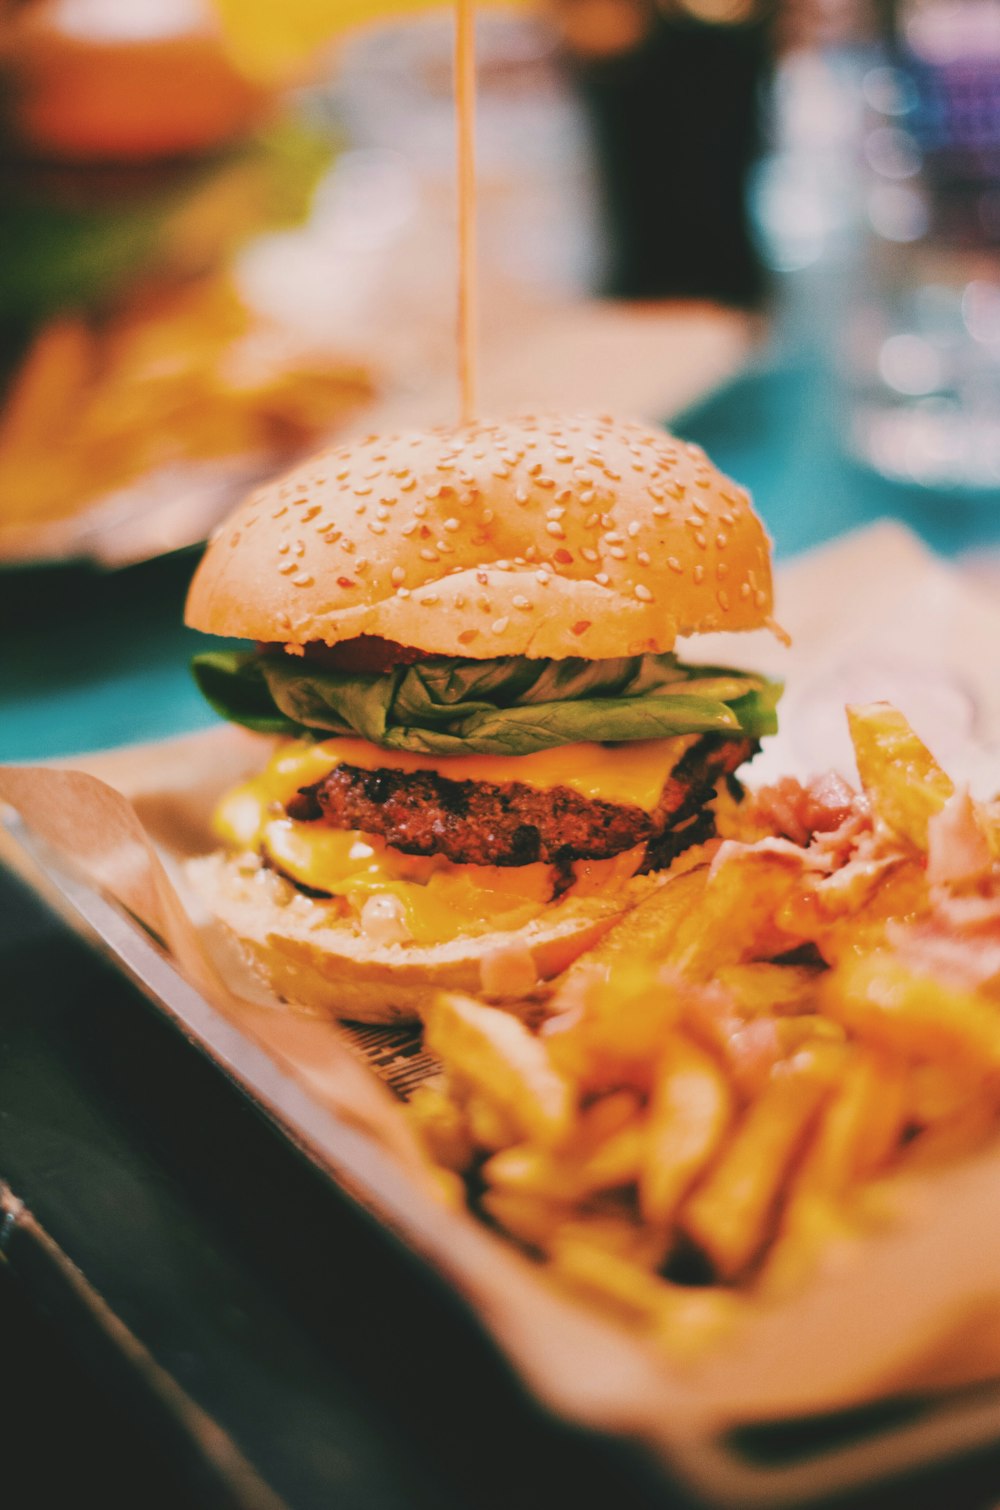 ハンバーガーとフライドポテトの食べ物の写真